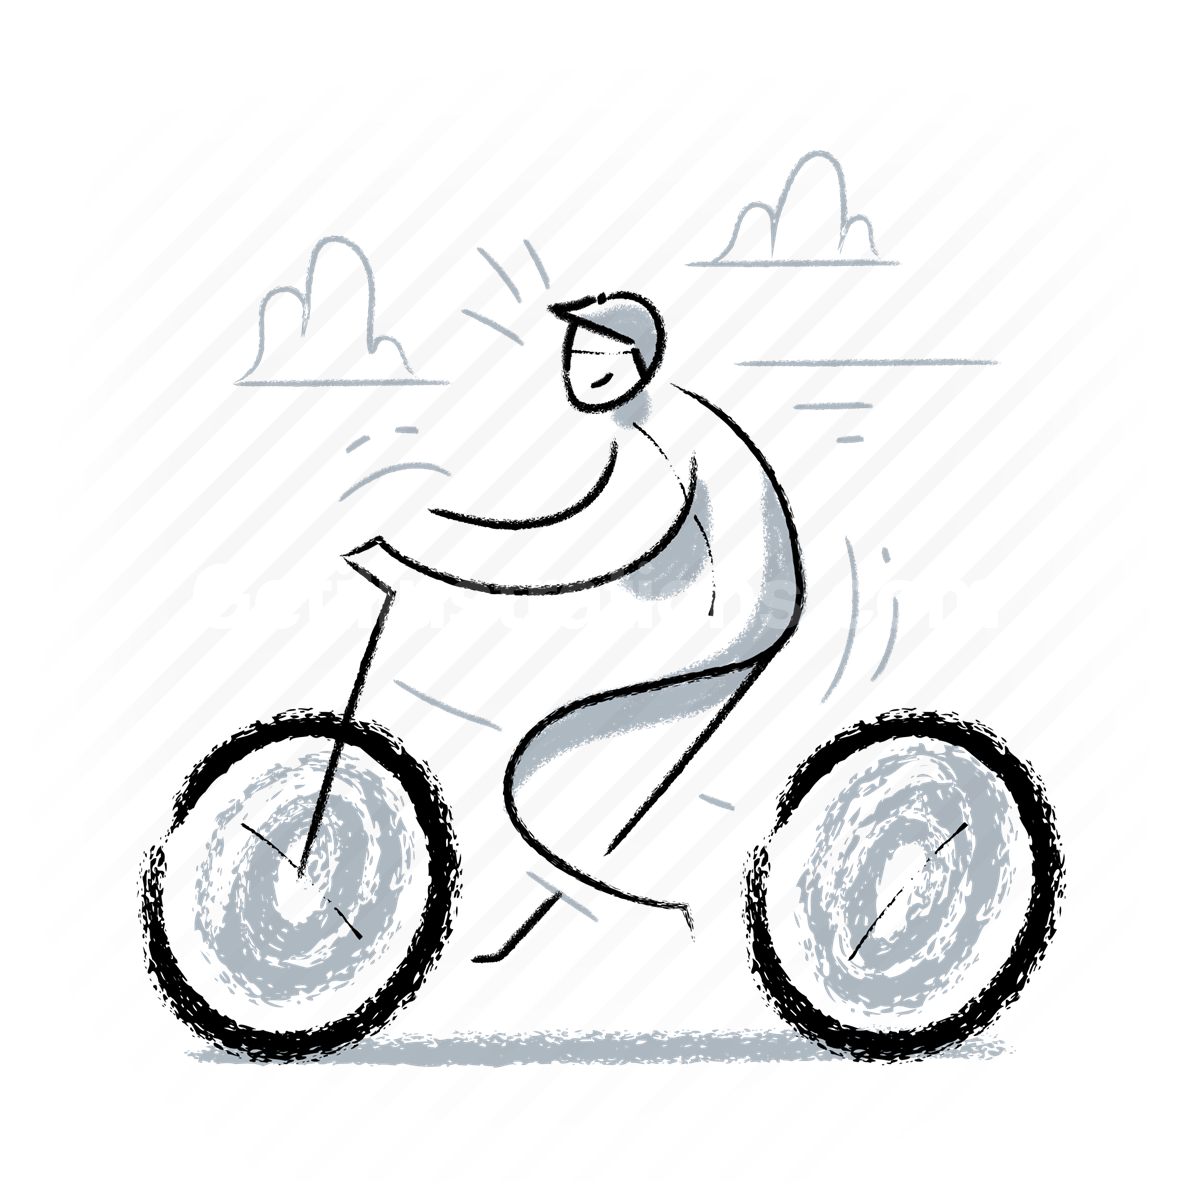 man, bike, bicycle